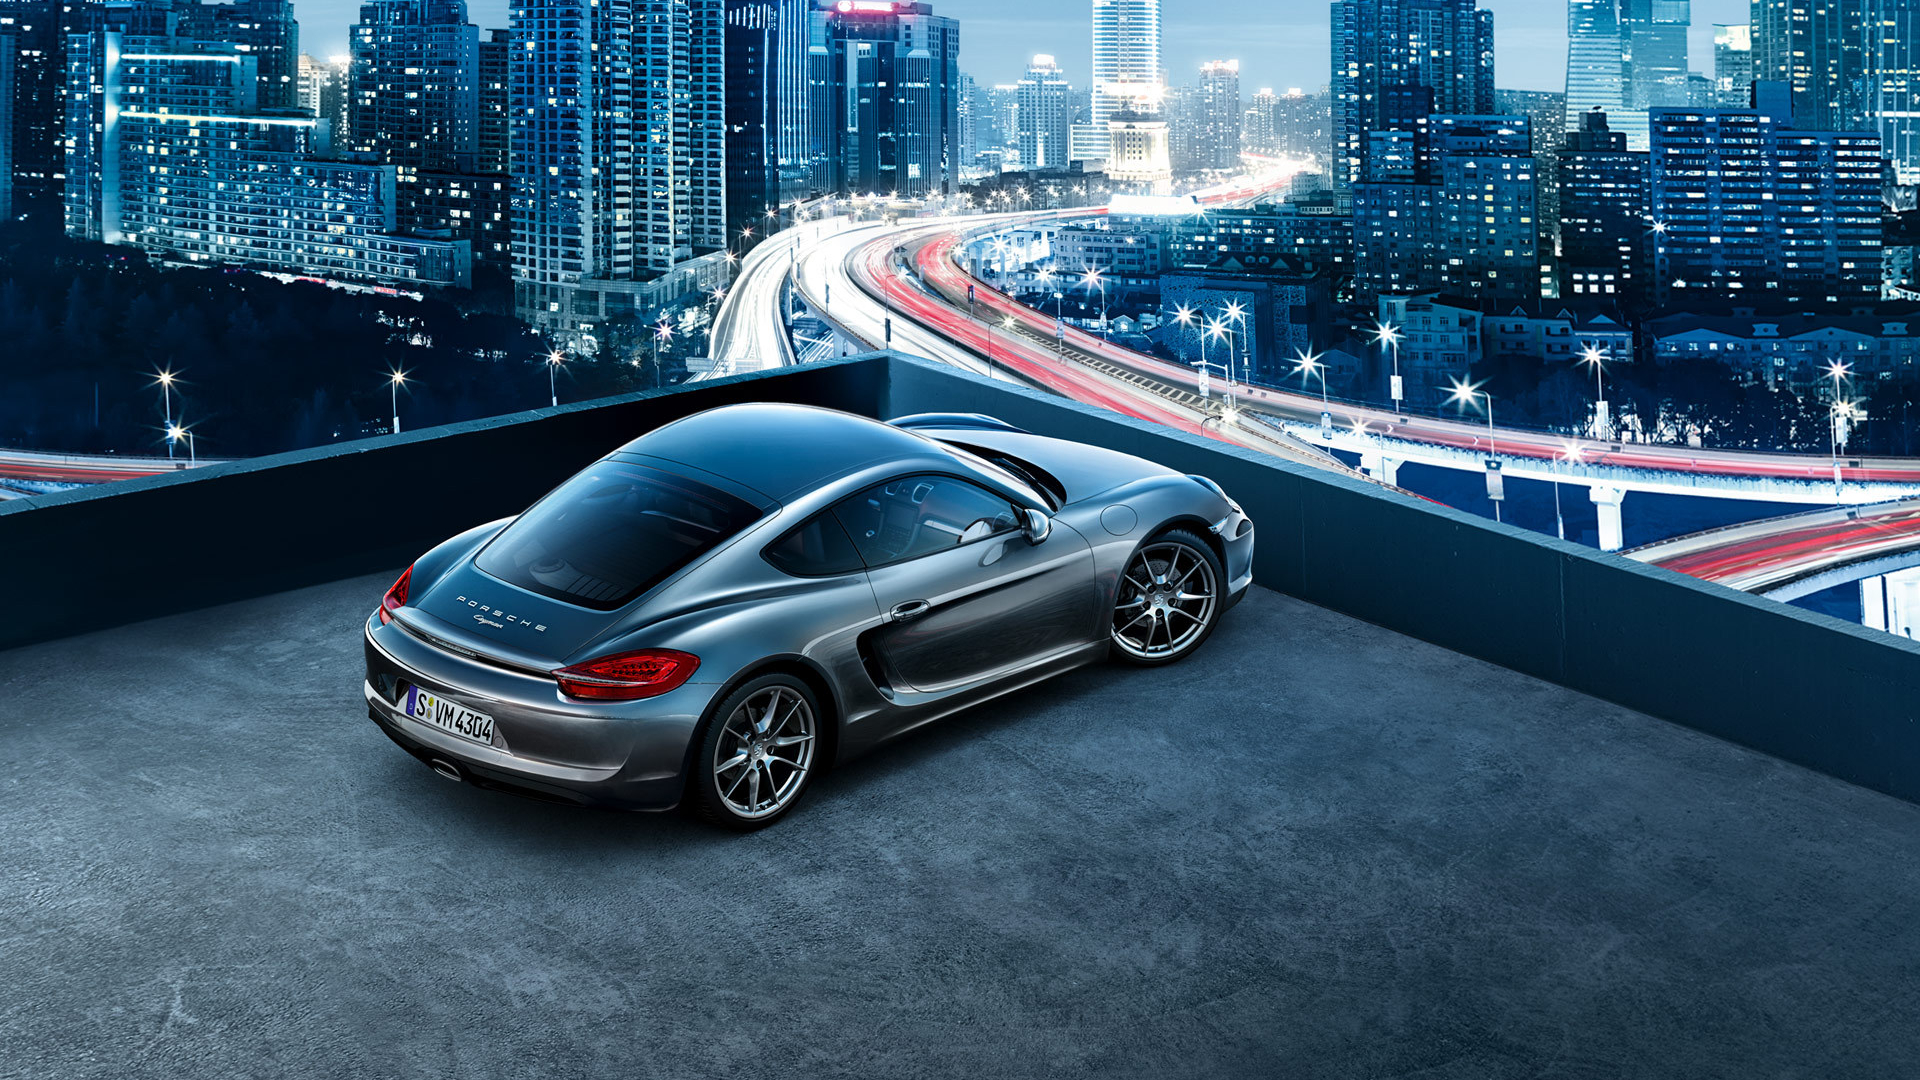 Descarga gratuita de fondo de pantalla para móvil de Porsche Caimán, Porsche, Coche De Plata, Vehículos, Coche.